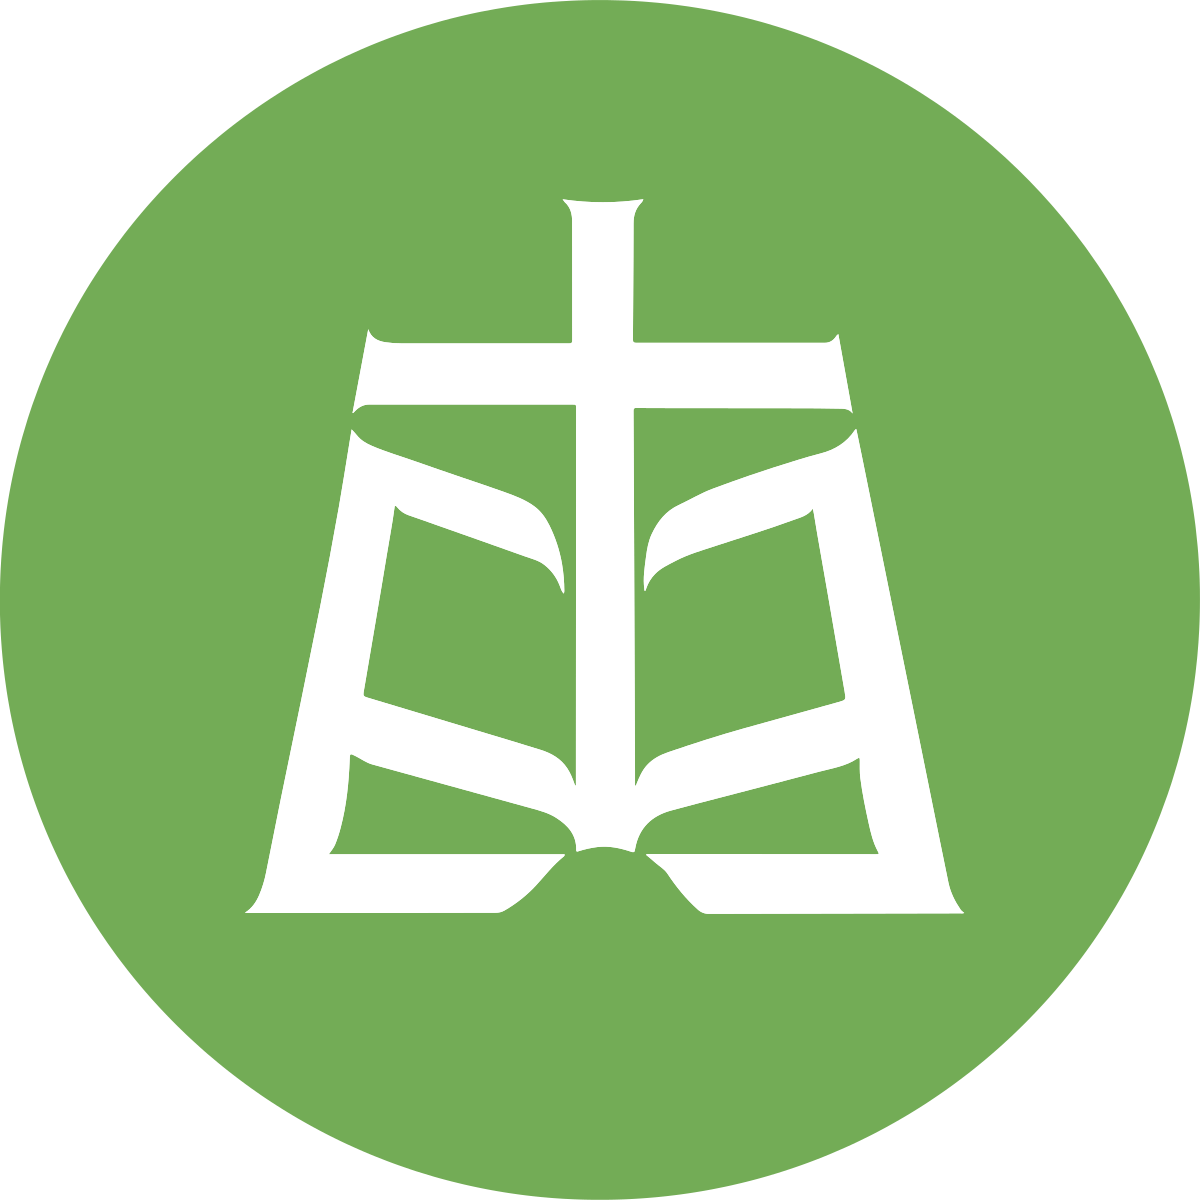 Raamattuopiston logo: tyylitelty kirja, jonka keskeltä nousee risti